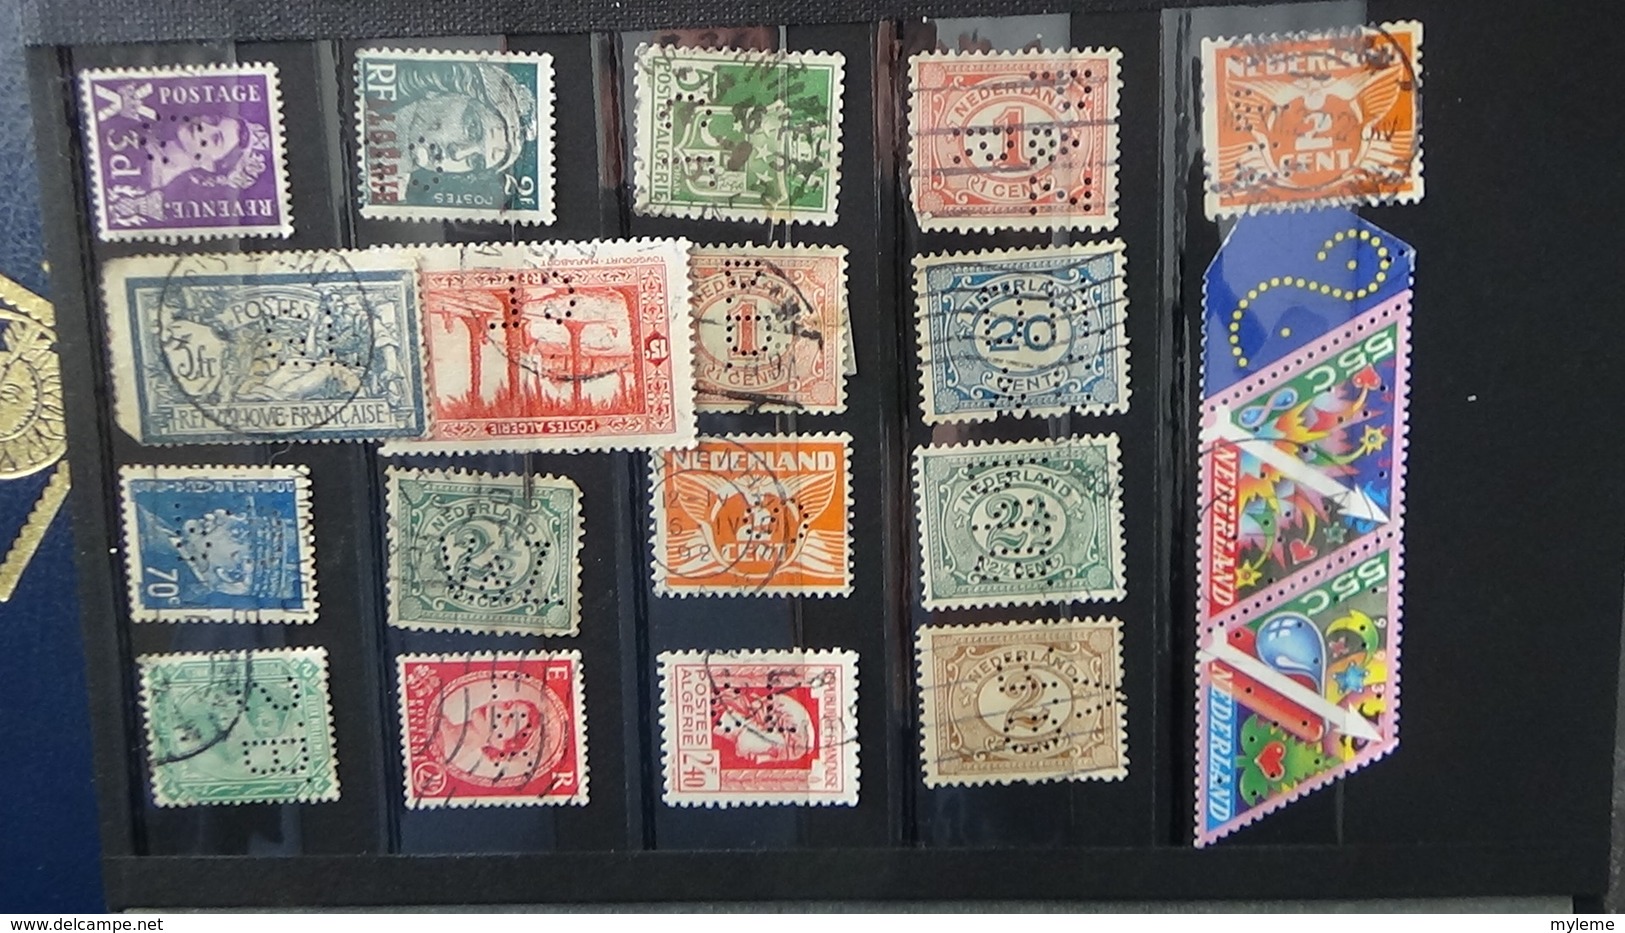 Très bon lot de 181 timbres perforés oblitérés divers pays dont France. A voir et à saisir !!!